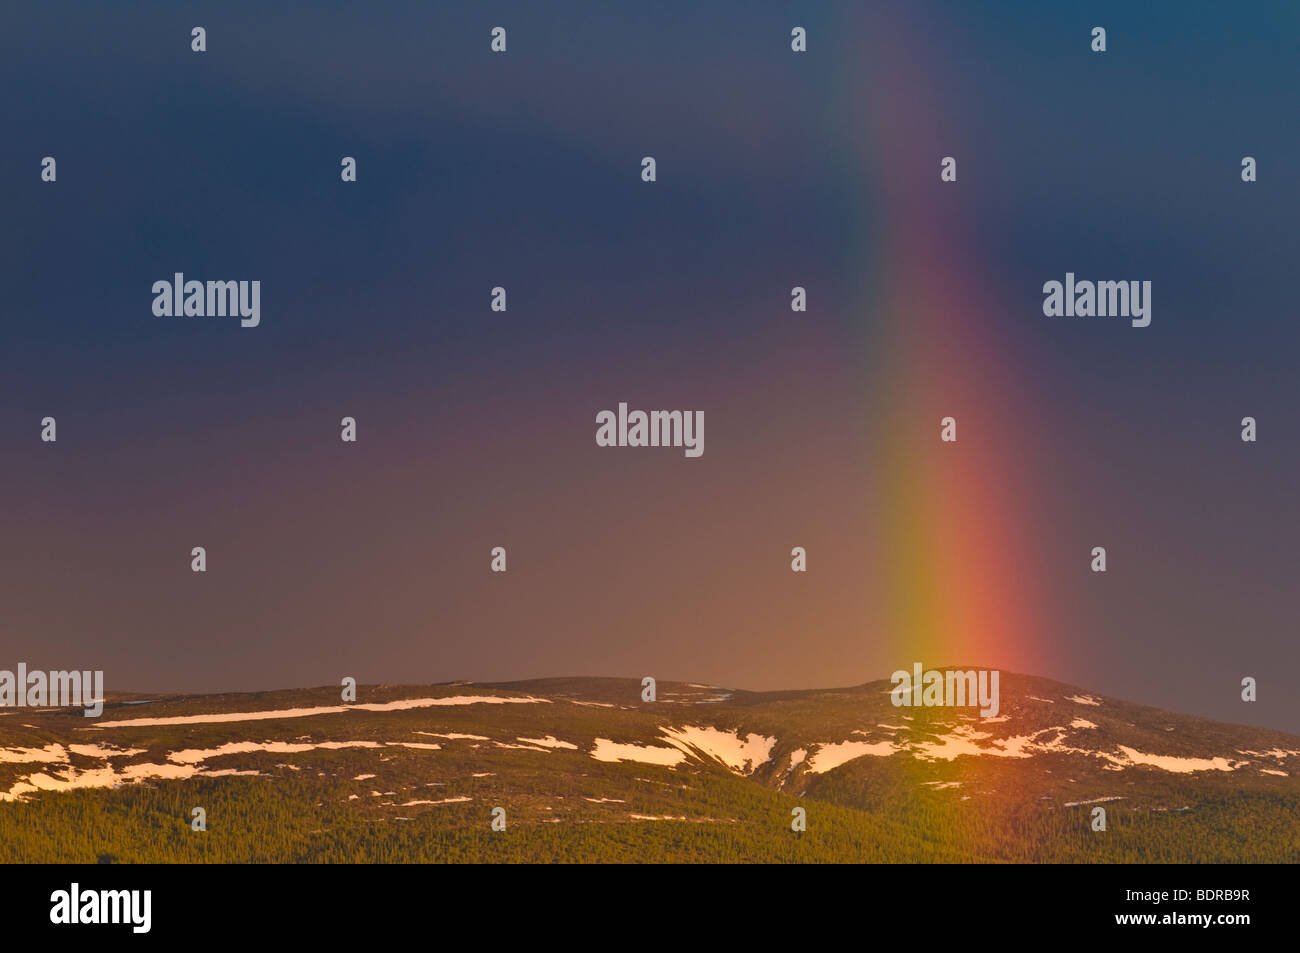 regenbogen ueber landschaft in gaellivare, lappland, schweden, rainbow at landscape in lapland, sweden Stock Photo